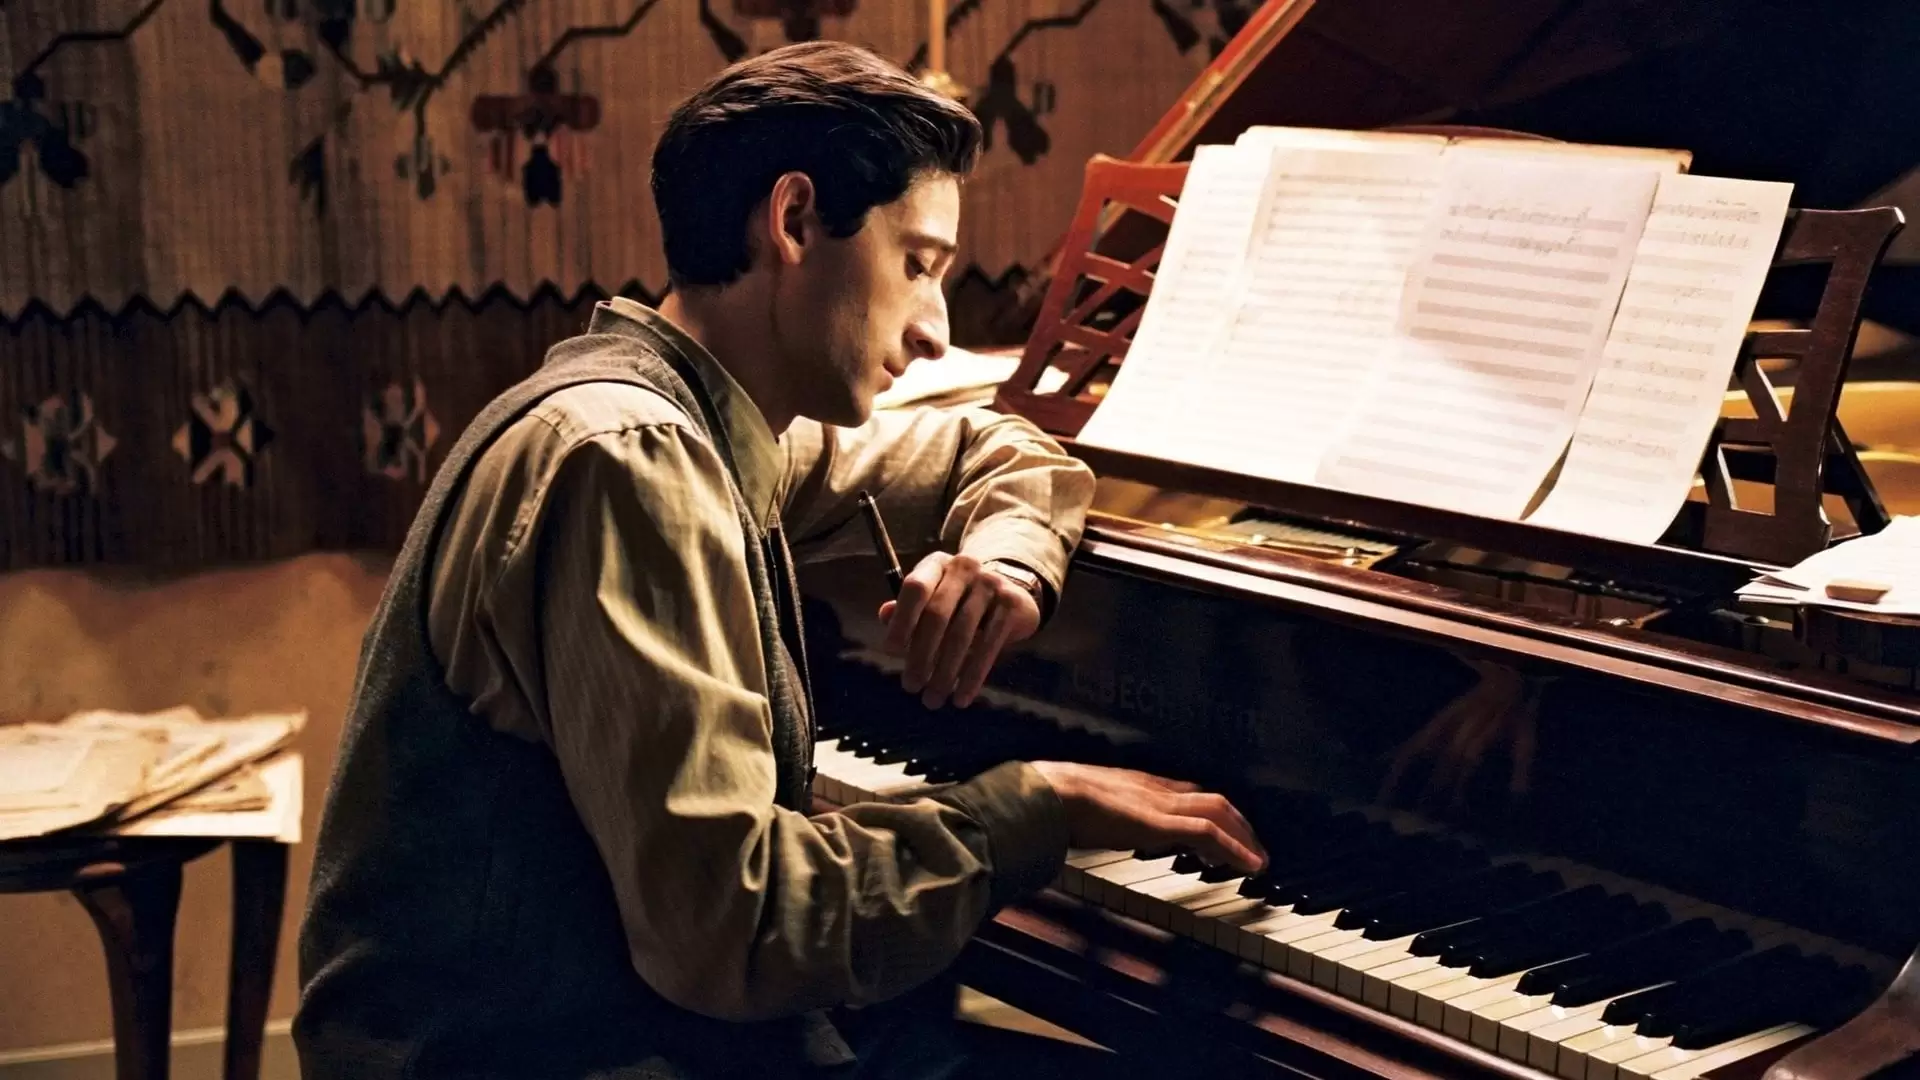 دانلود فیلم The Pianist 2002 (پیانیست) با زیرنویس فارسی و تماشای آنلاین